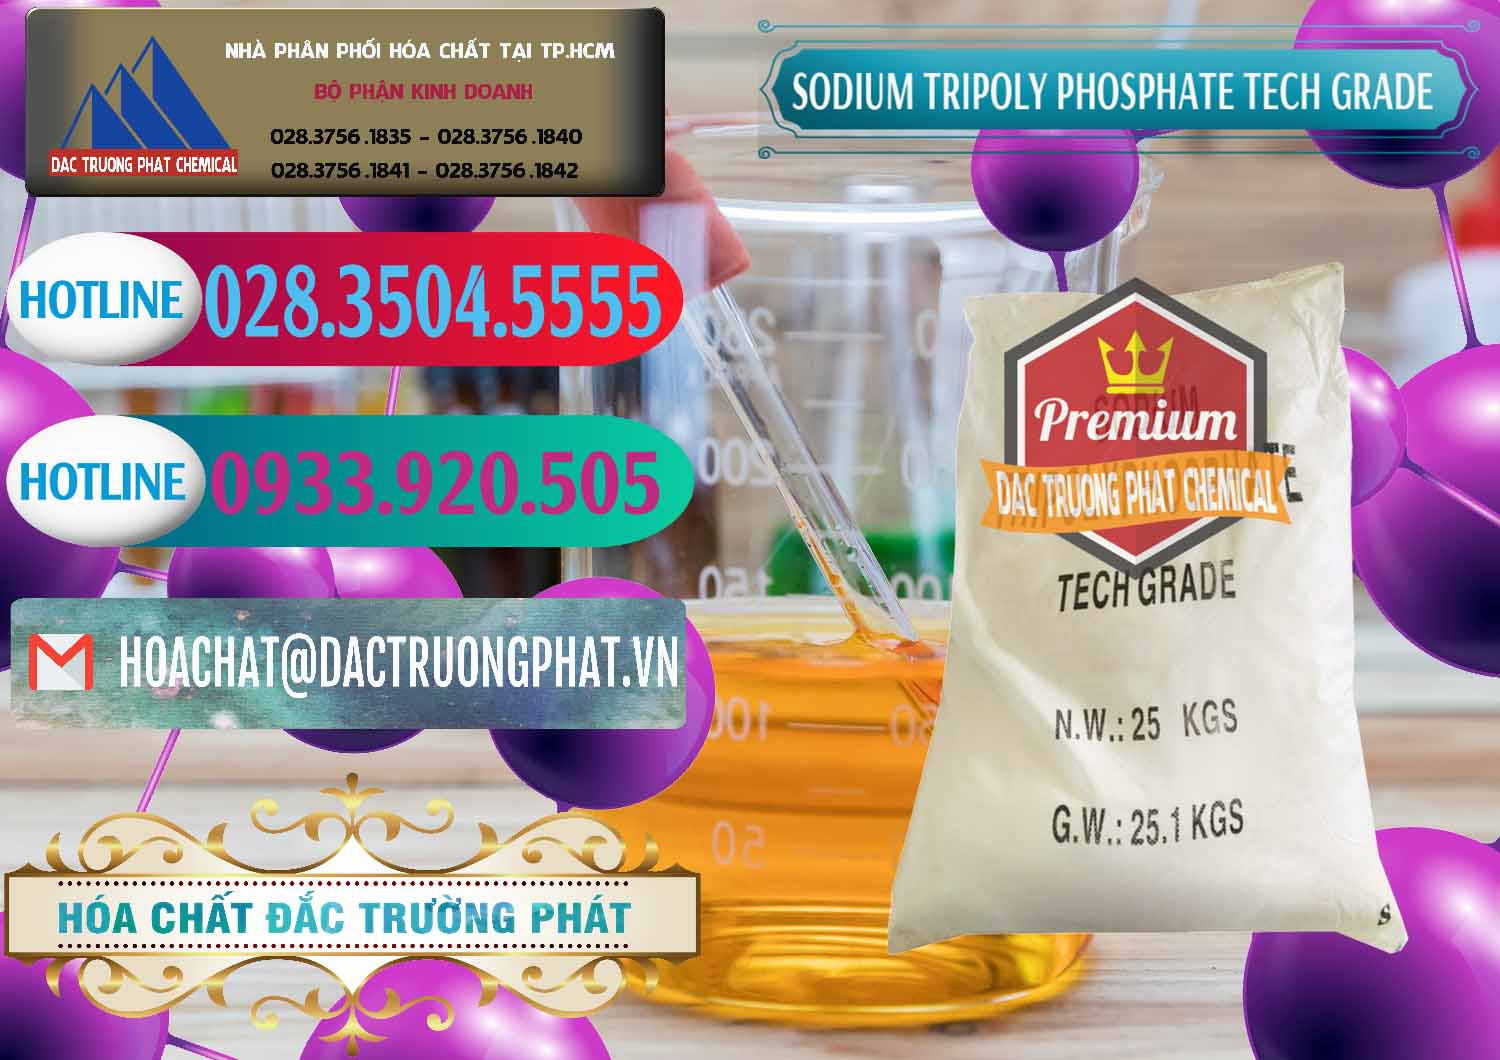 Nơi nhập khẩu _ bán Sodium Tripoly Phosphate - STPP Tech Grade Trung Quốc China - 0453 - Cty cung cấp và phân phối hóa chất tại TP.HCM - truongphat.vn